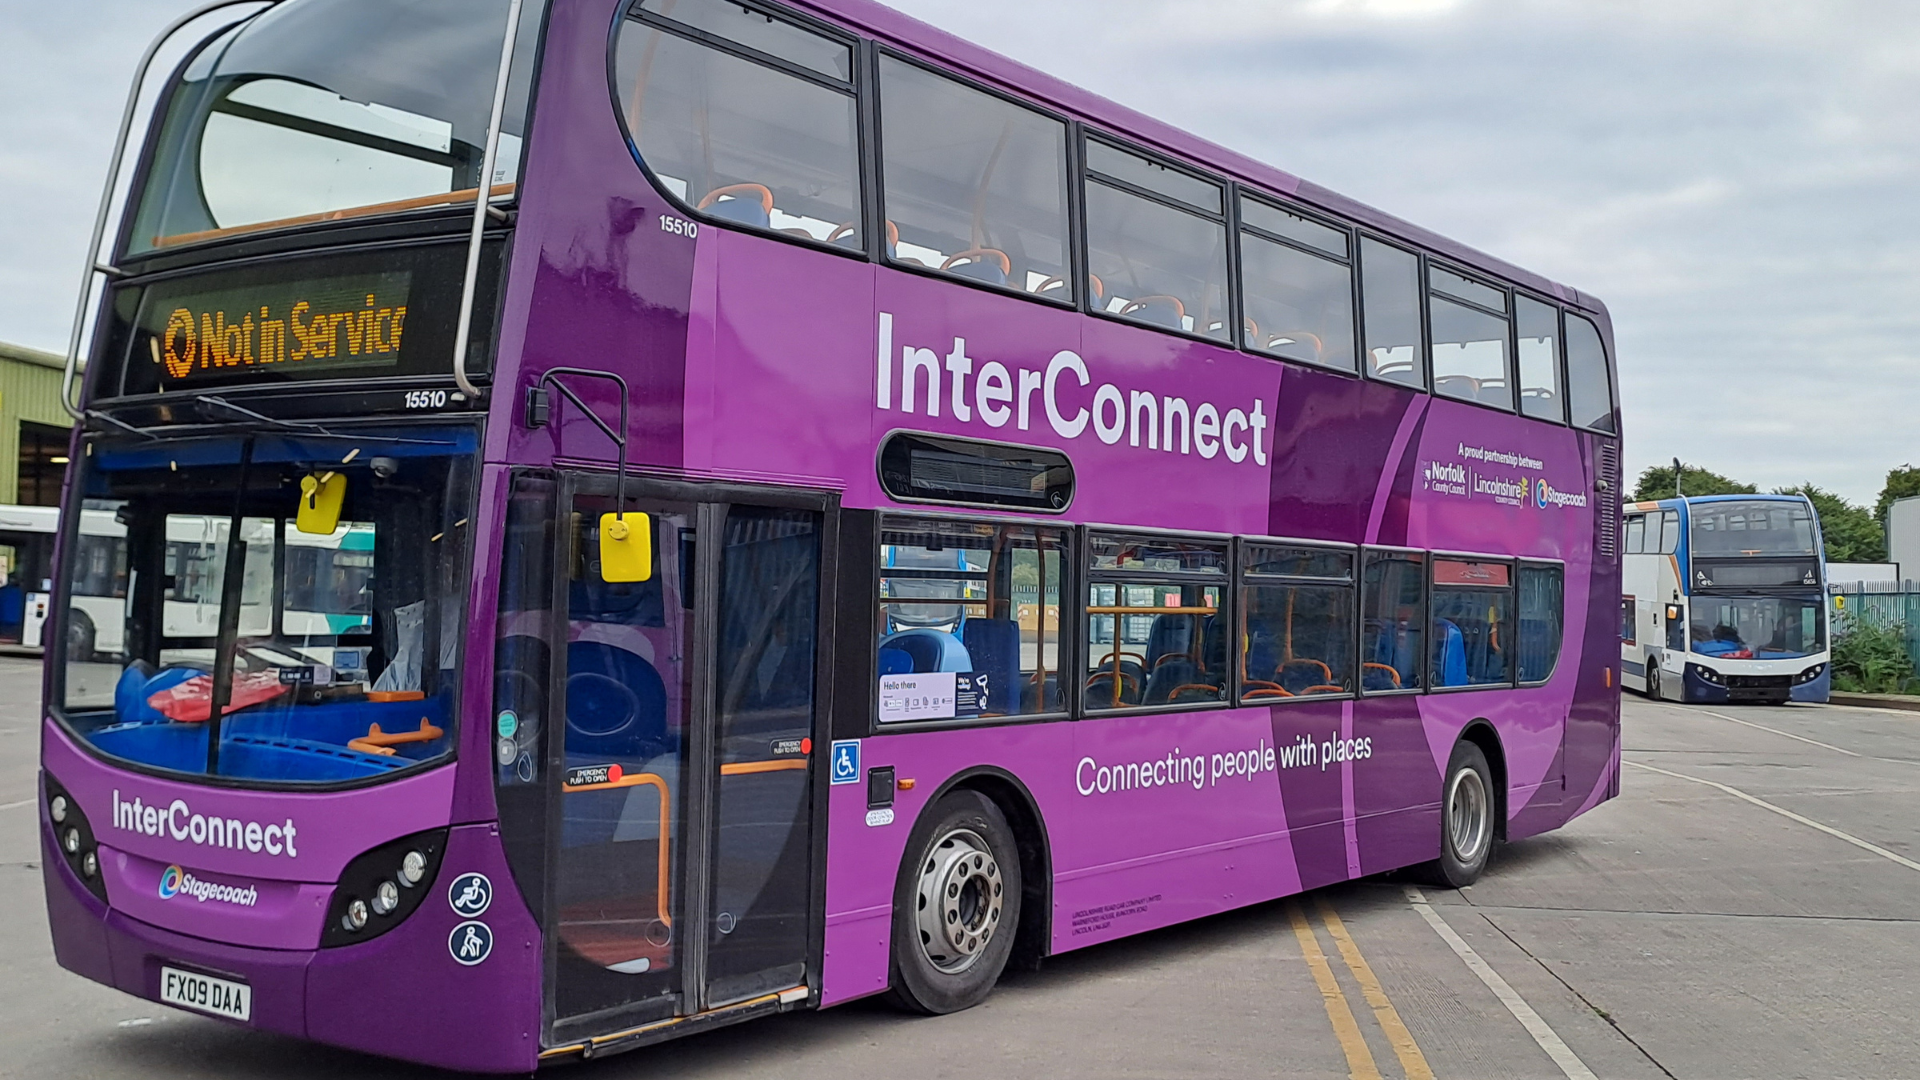 A purple double decker bus